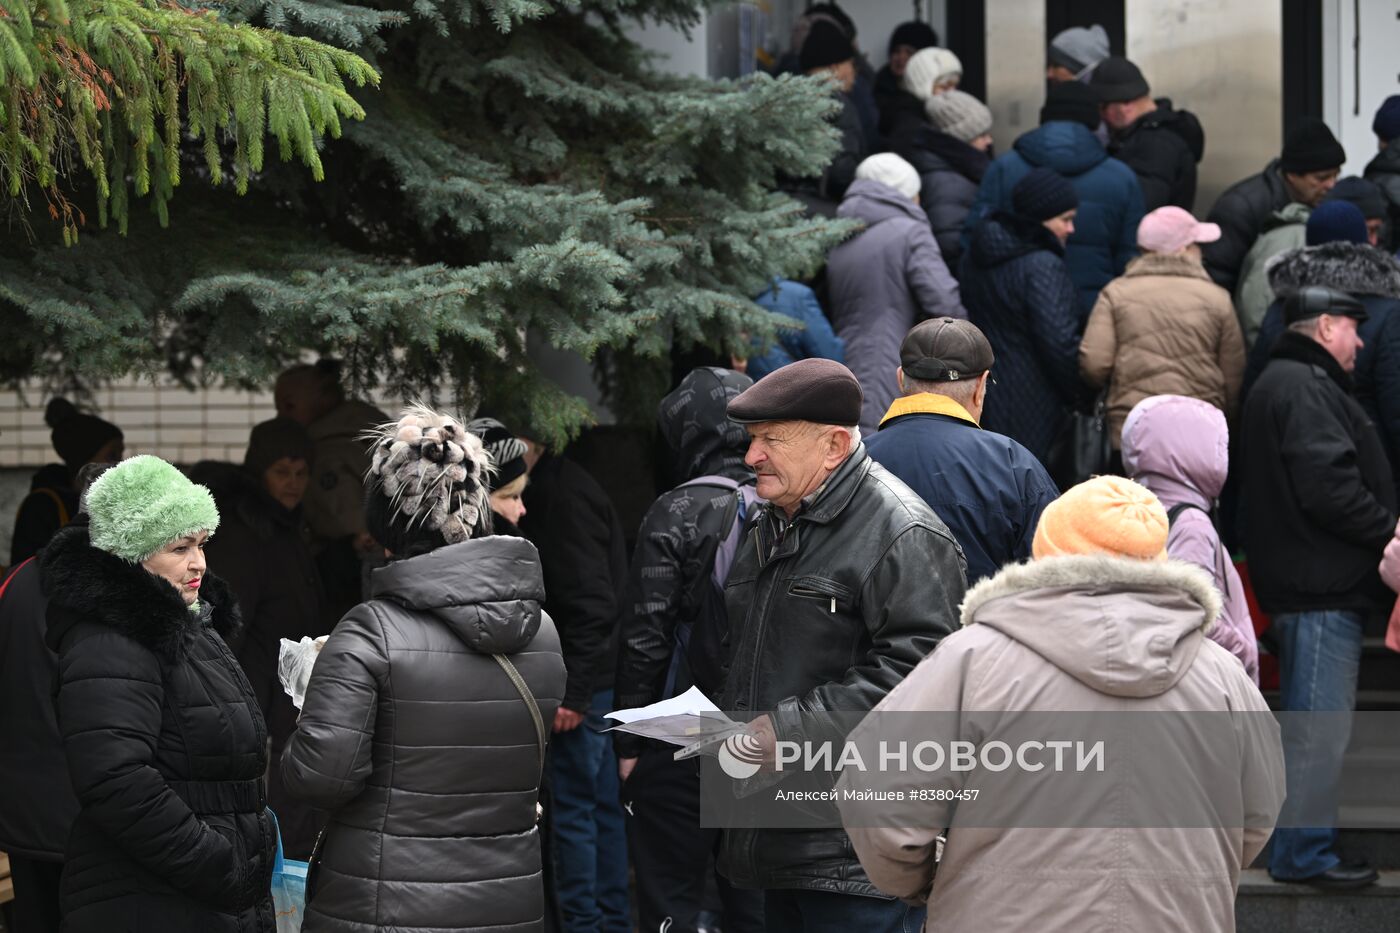 Работа пункта приёма документов на российское гражданство в Новой Каховке